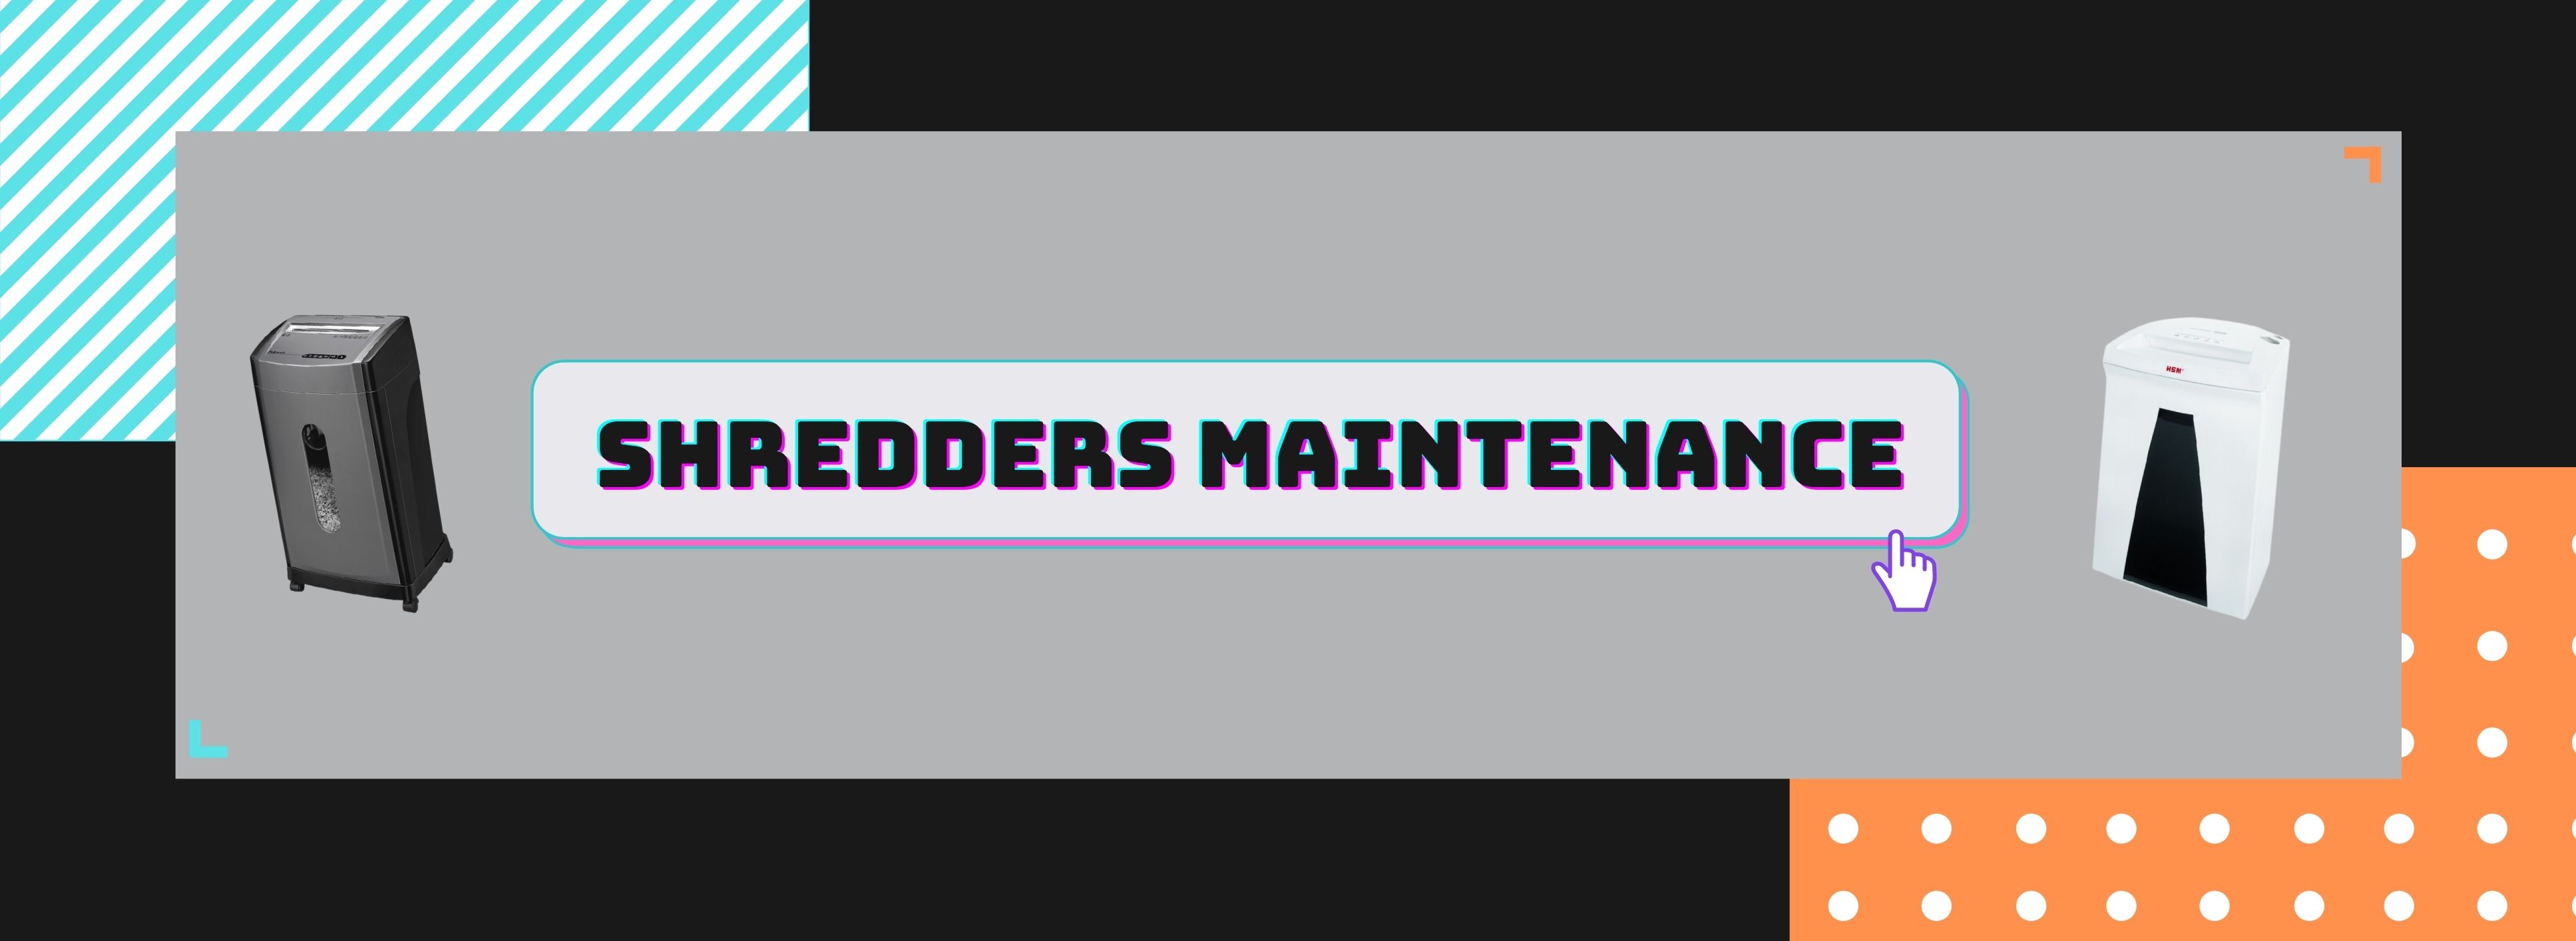 Shredders Maintenance